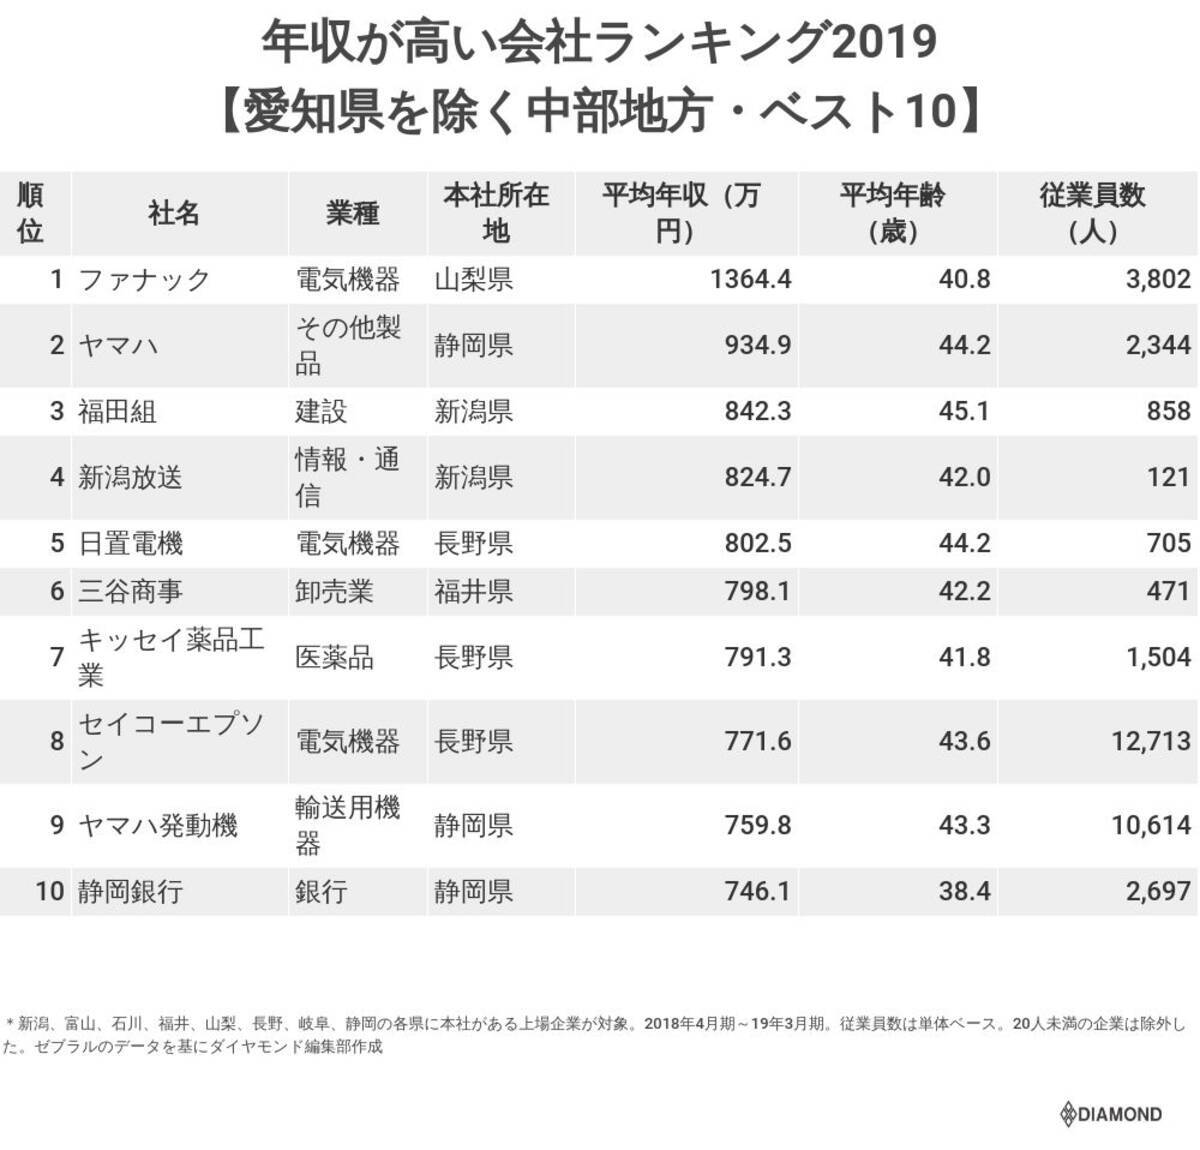 年収が高い会社ランキング19 愛知県を除く中部地方 ベスト10 19年10月10日 エキサイトニュース